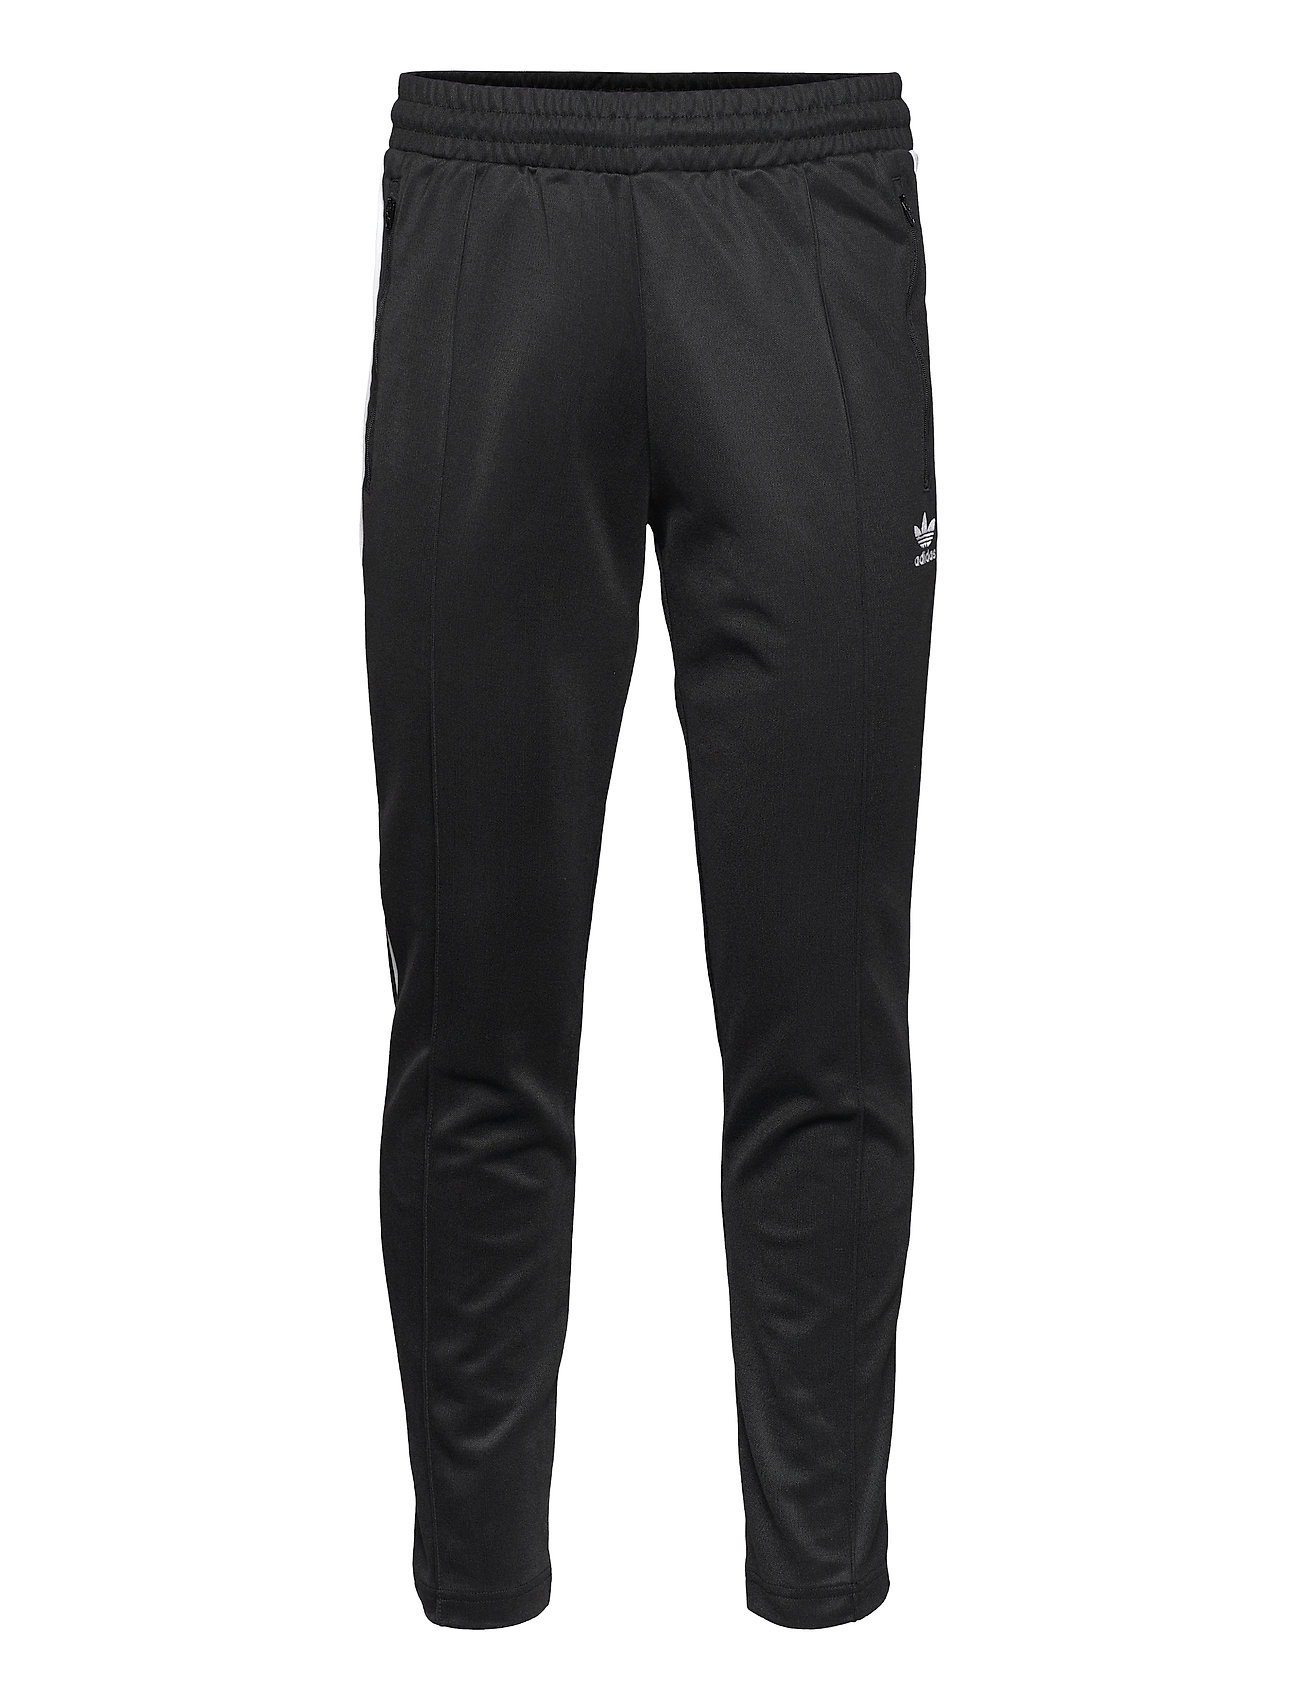 Adicolor Classics Beckenbauer Primeblue Track Pants Collegehousut Olohousut Musta Adidas Originals, adidas Originals